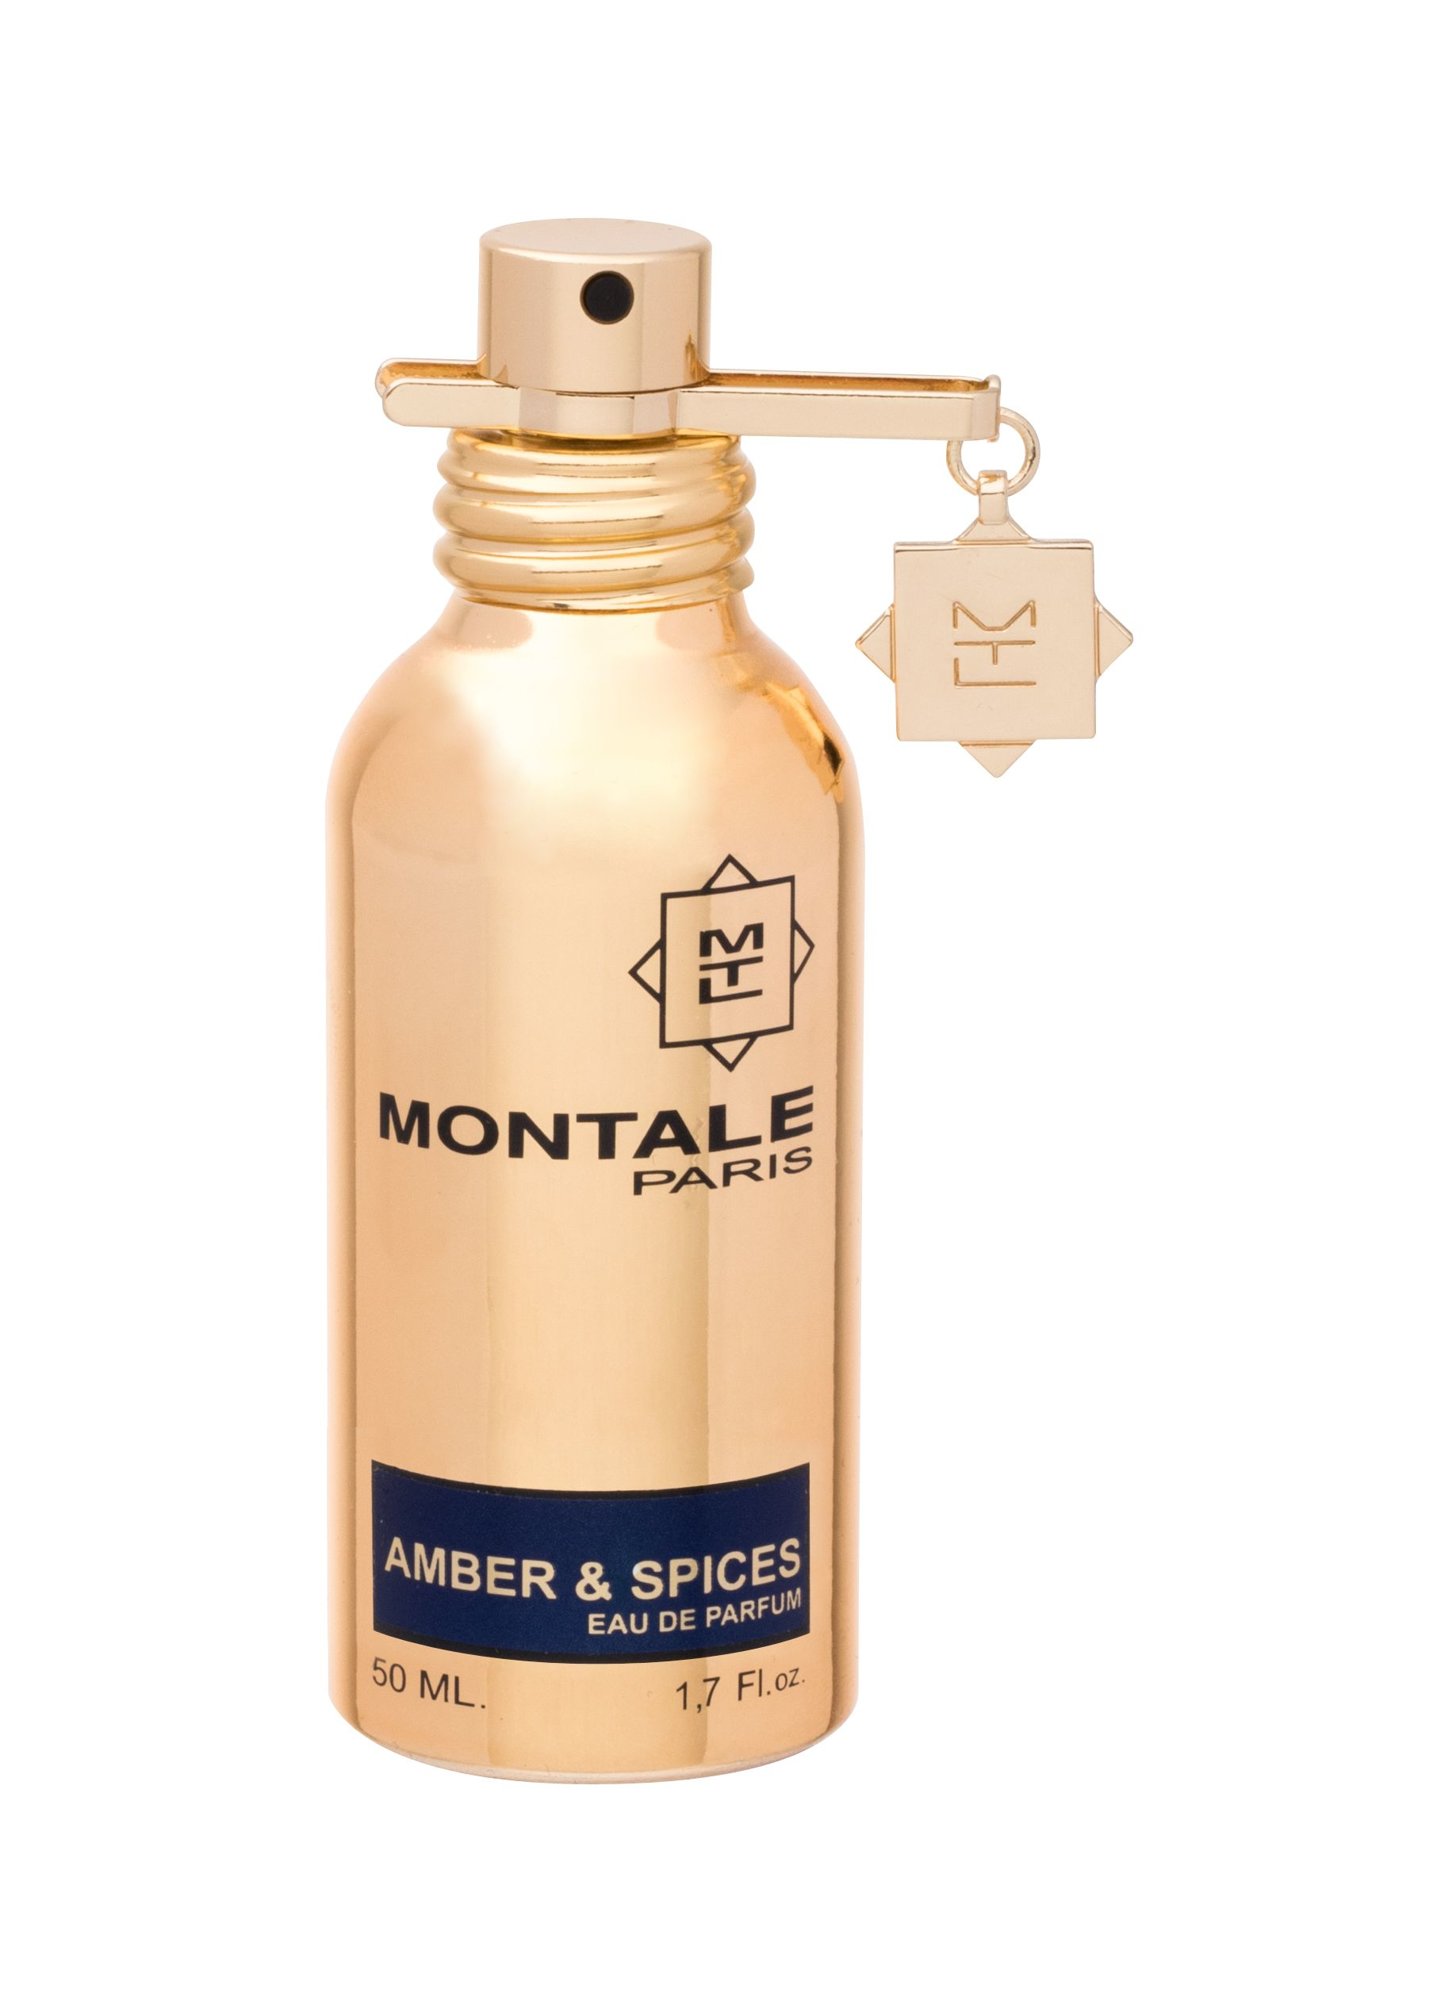 Montale Paris Amber&Spices